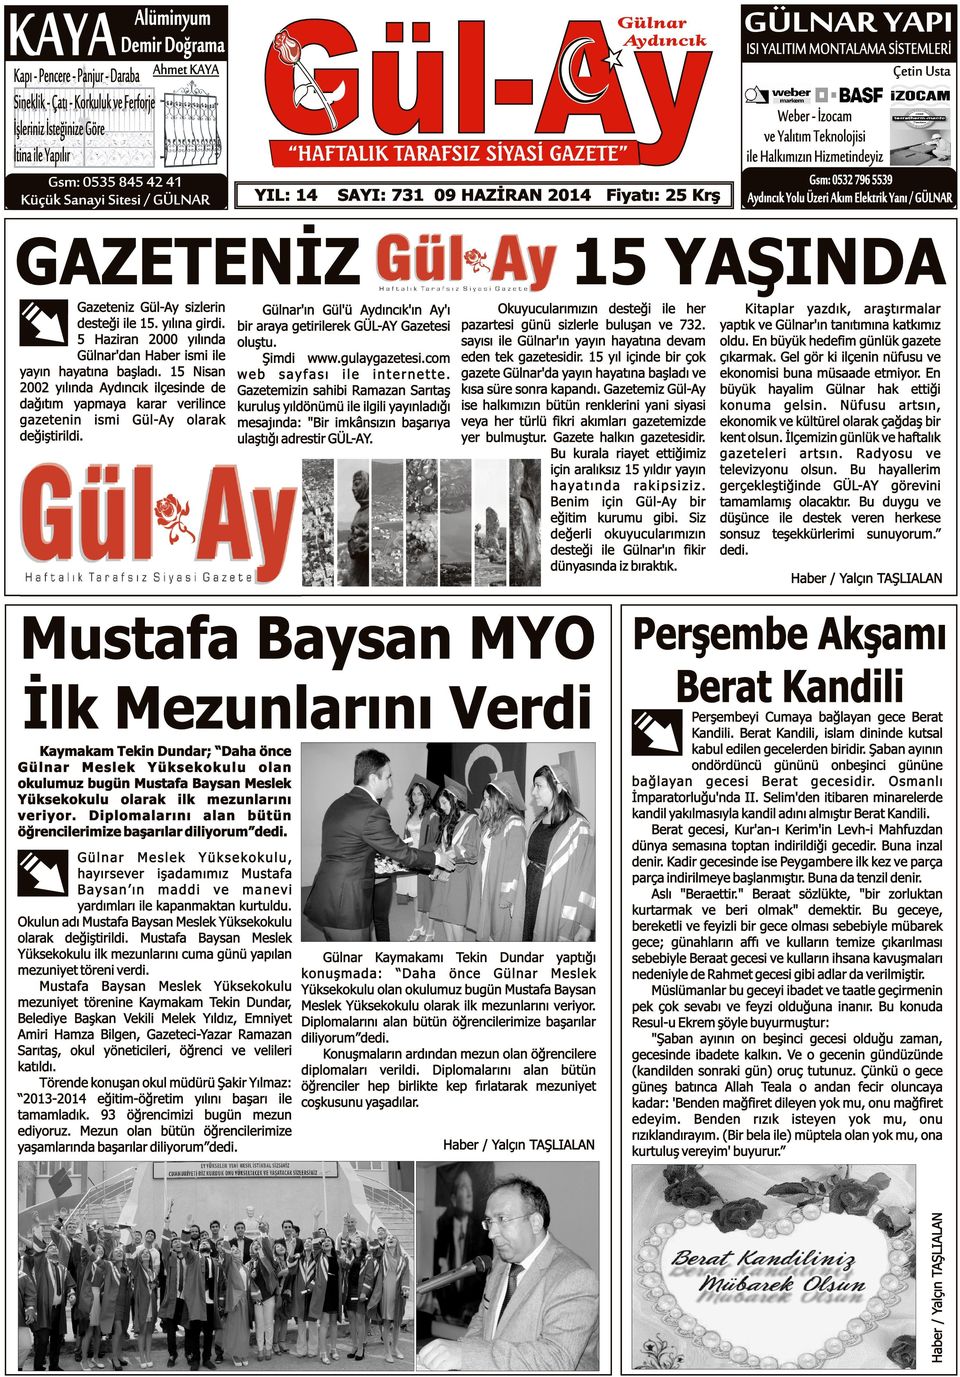 Gül-Ay sizlerin desteği ile 15. yılına girdi. 5 Haziran 2000 yılında Gülnar'dan Haber ismi ile yayın hayatına başladı.